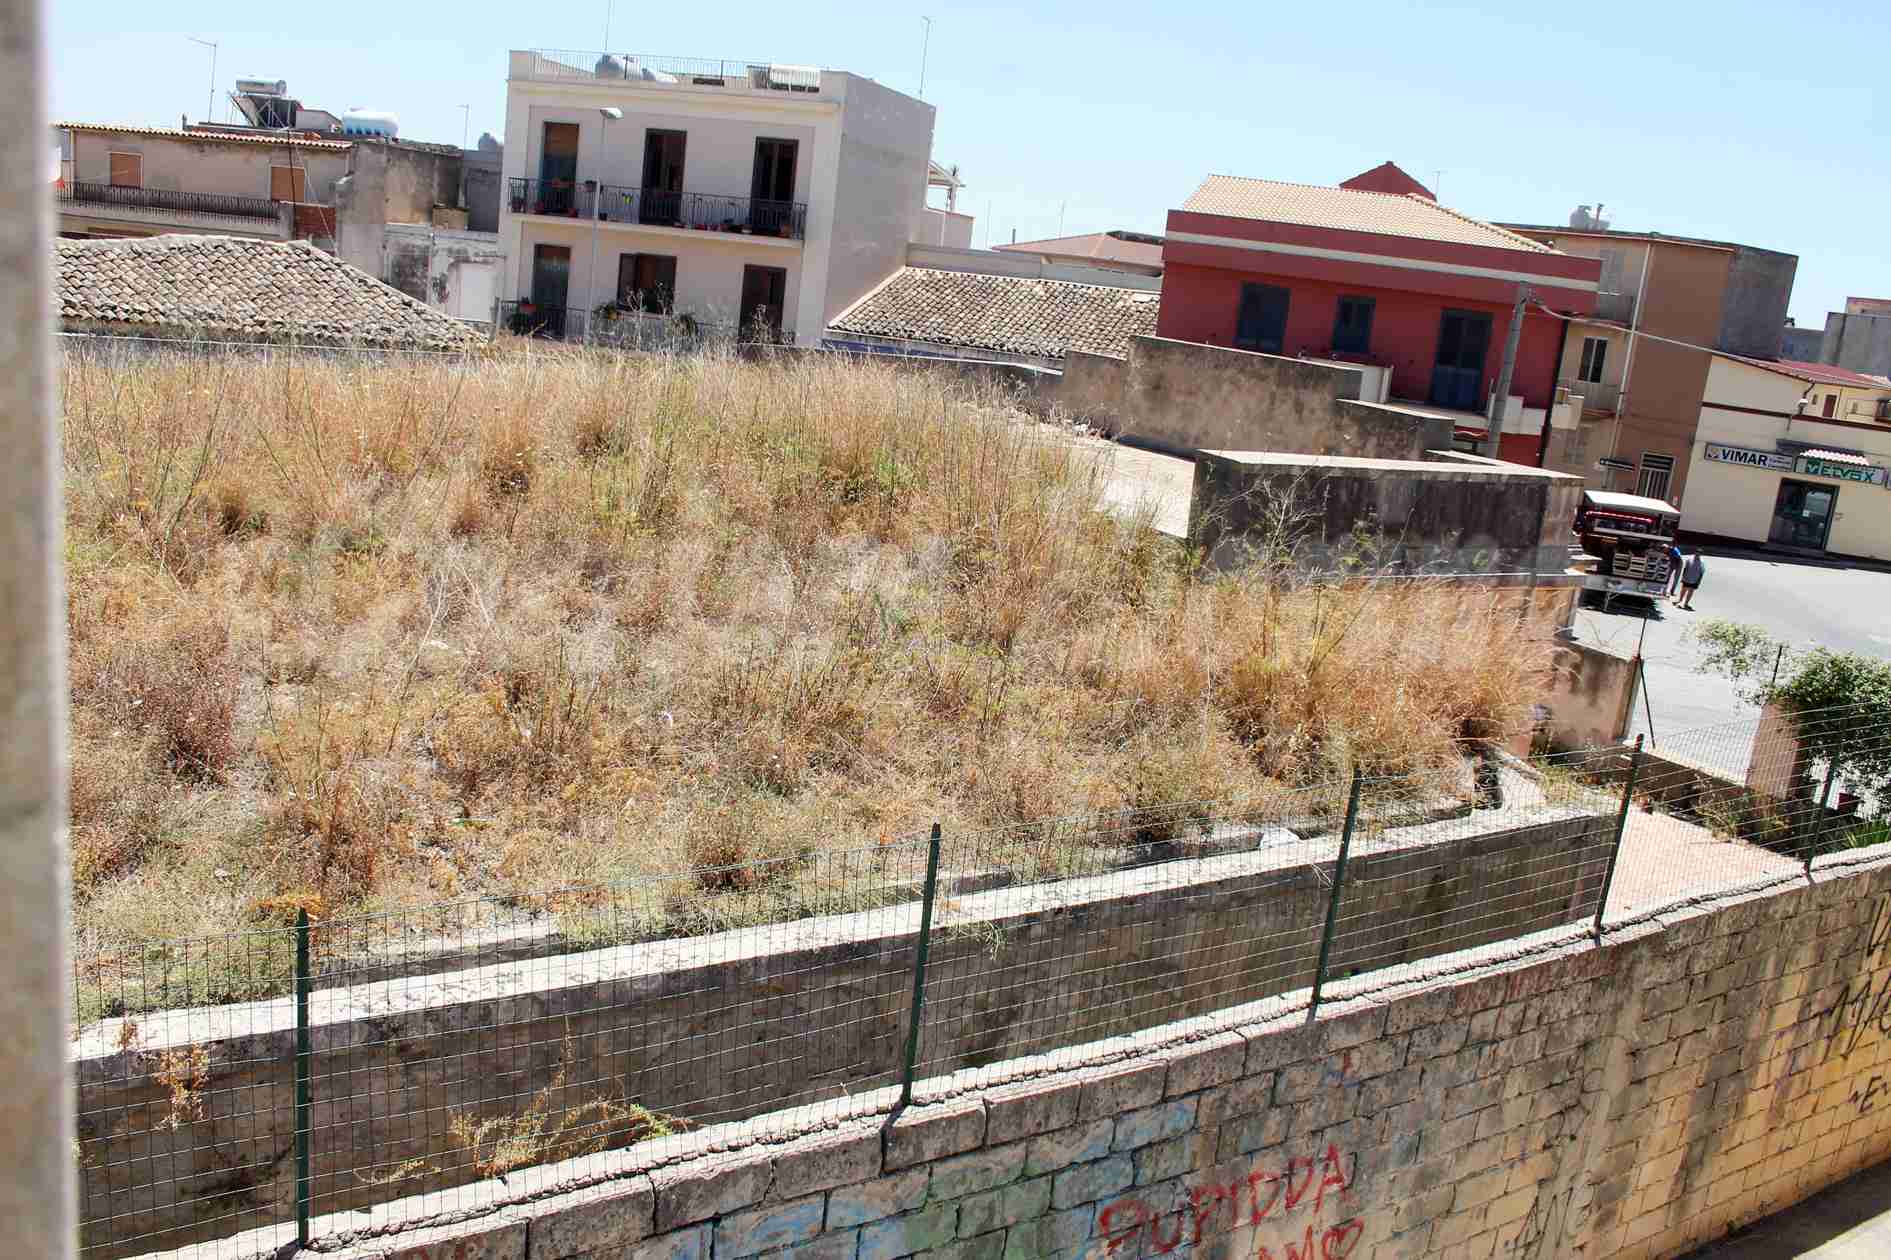 Serbatoio d’acqua potabile di via Santa Alessandra, tra incuria, erba alta e tetto a rischio incendio